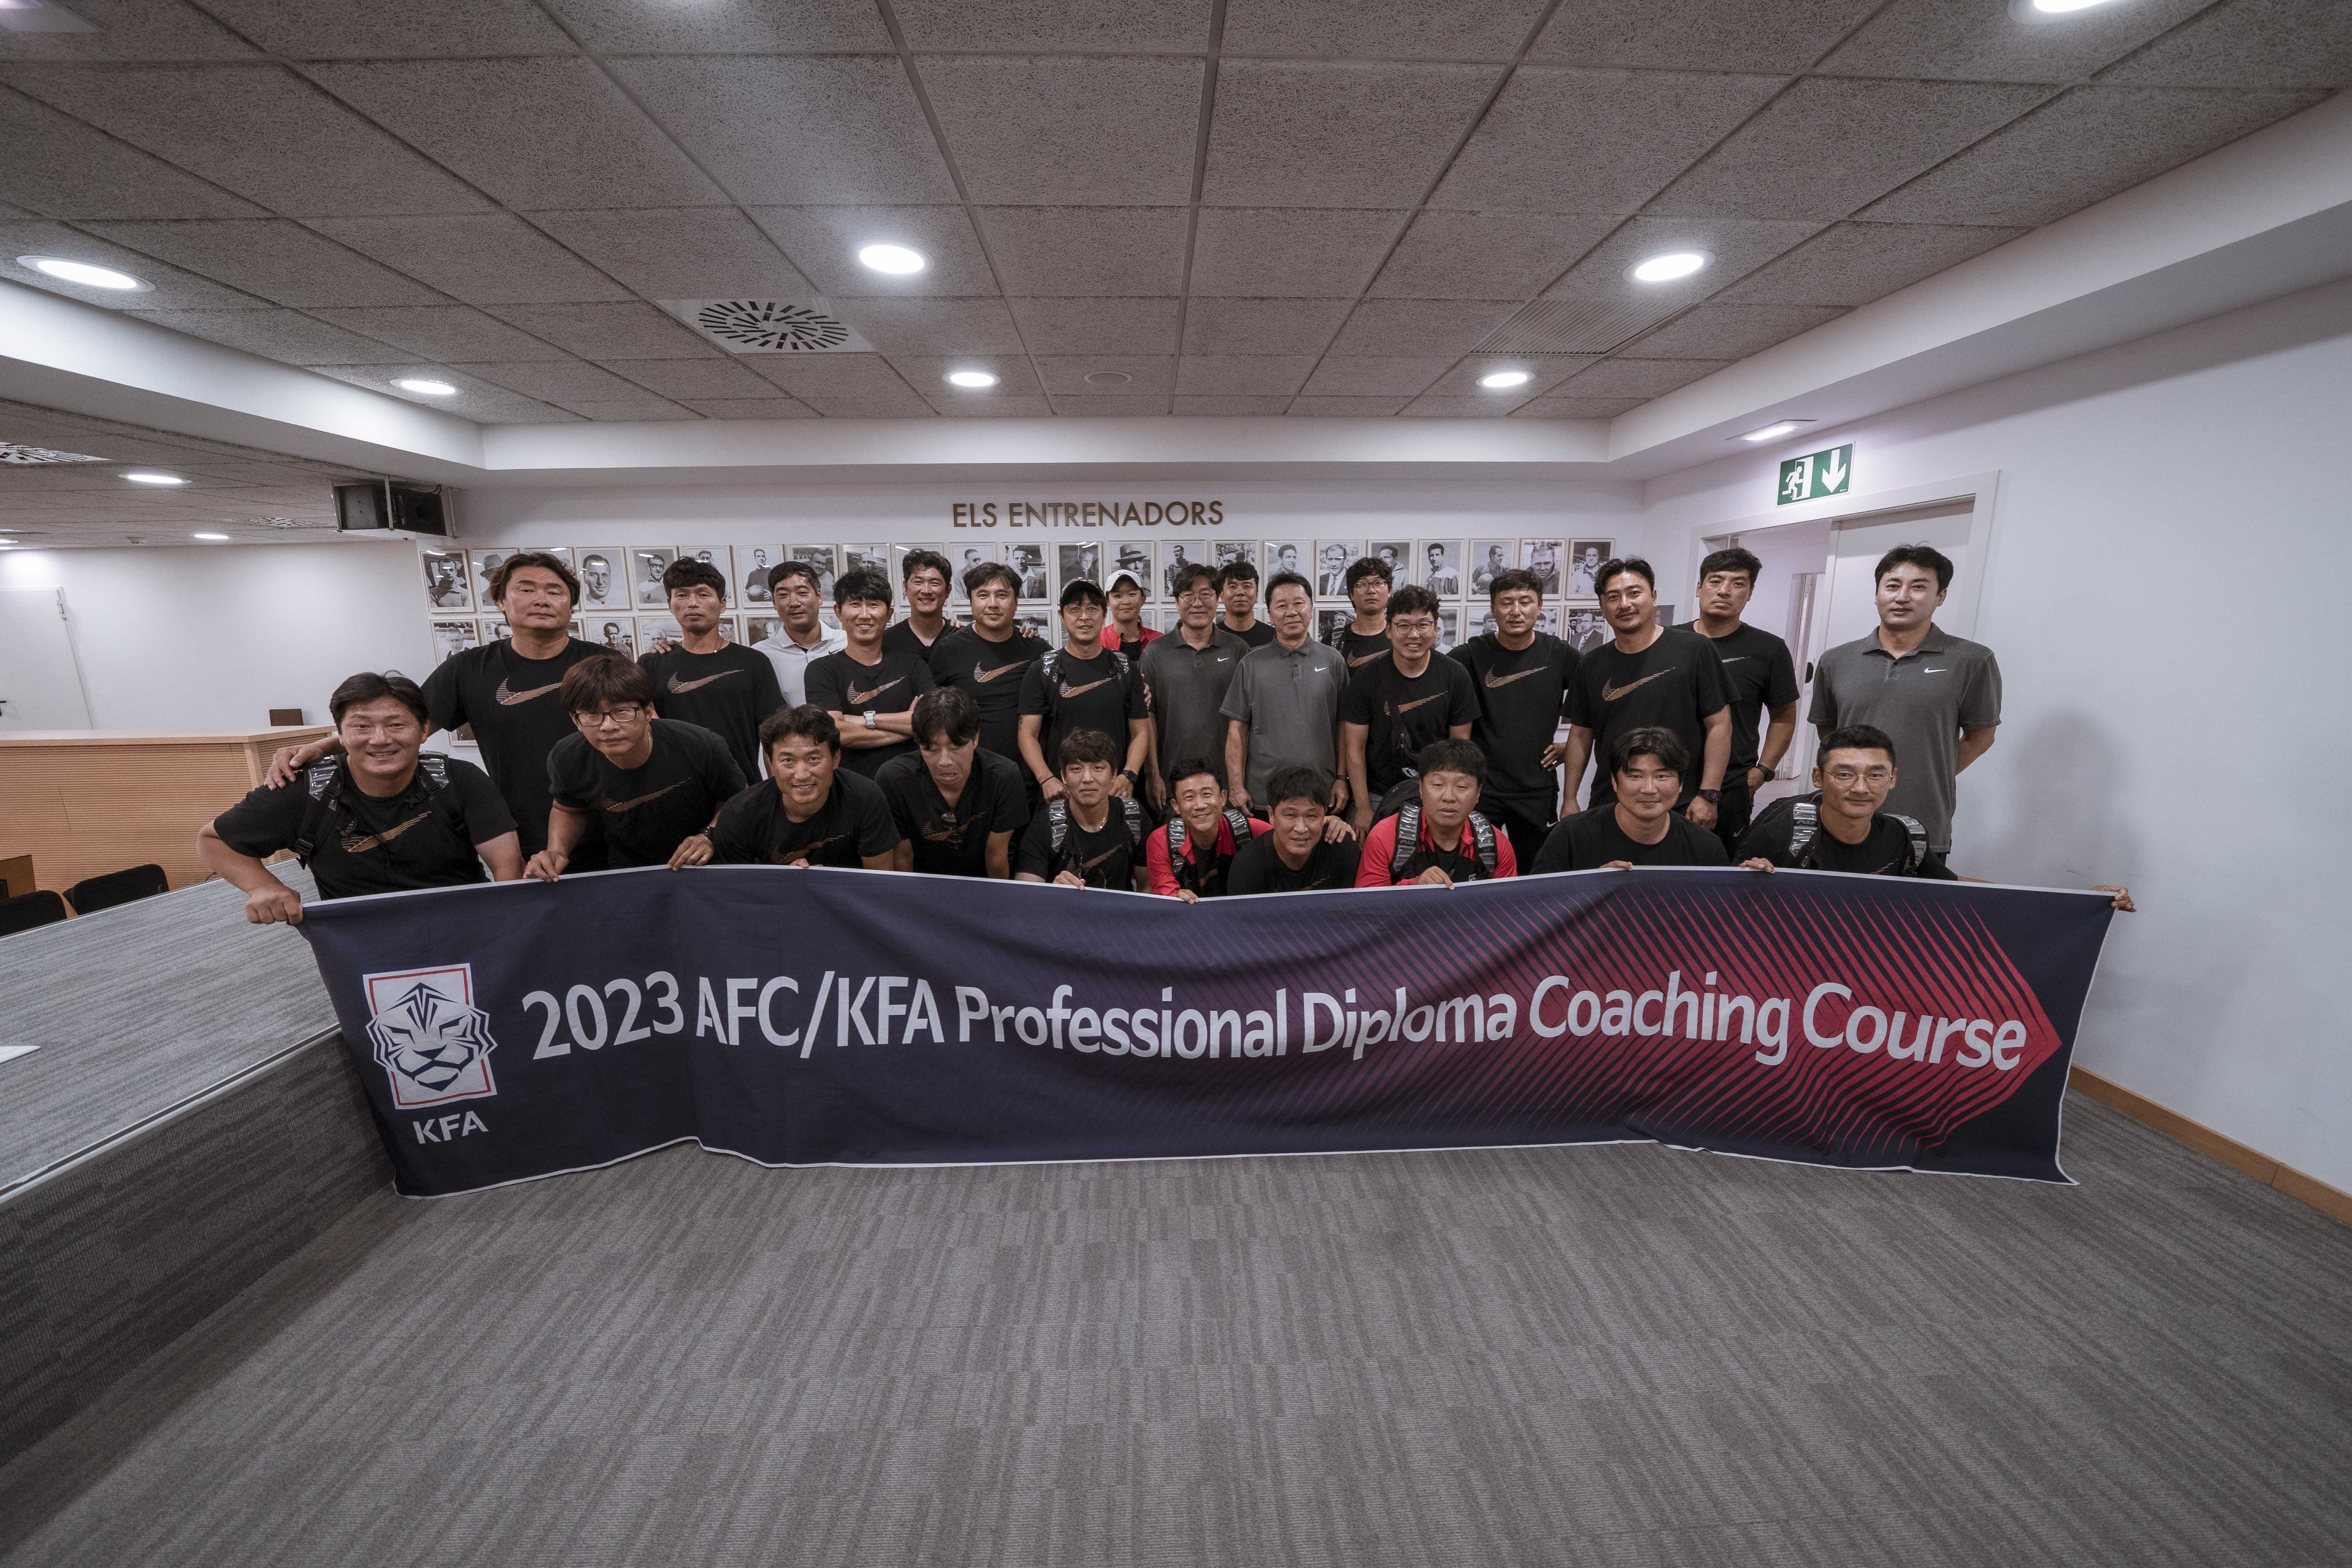 Nos visitan 30 entrenadores de la federación surcoreana